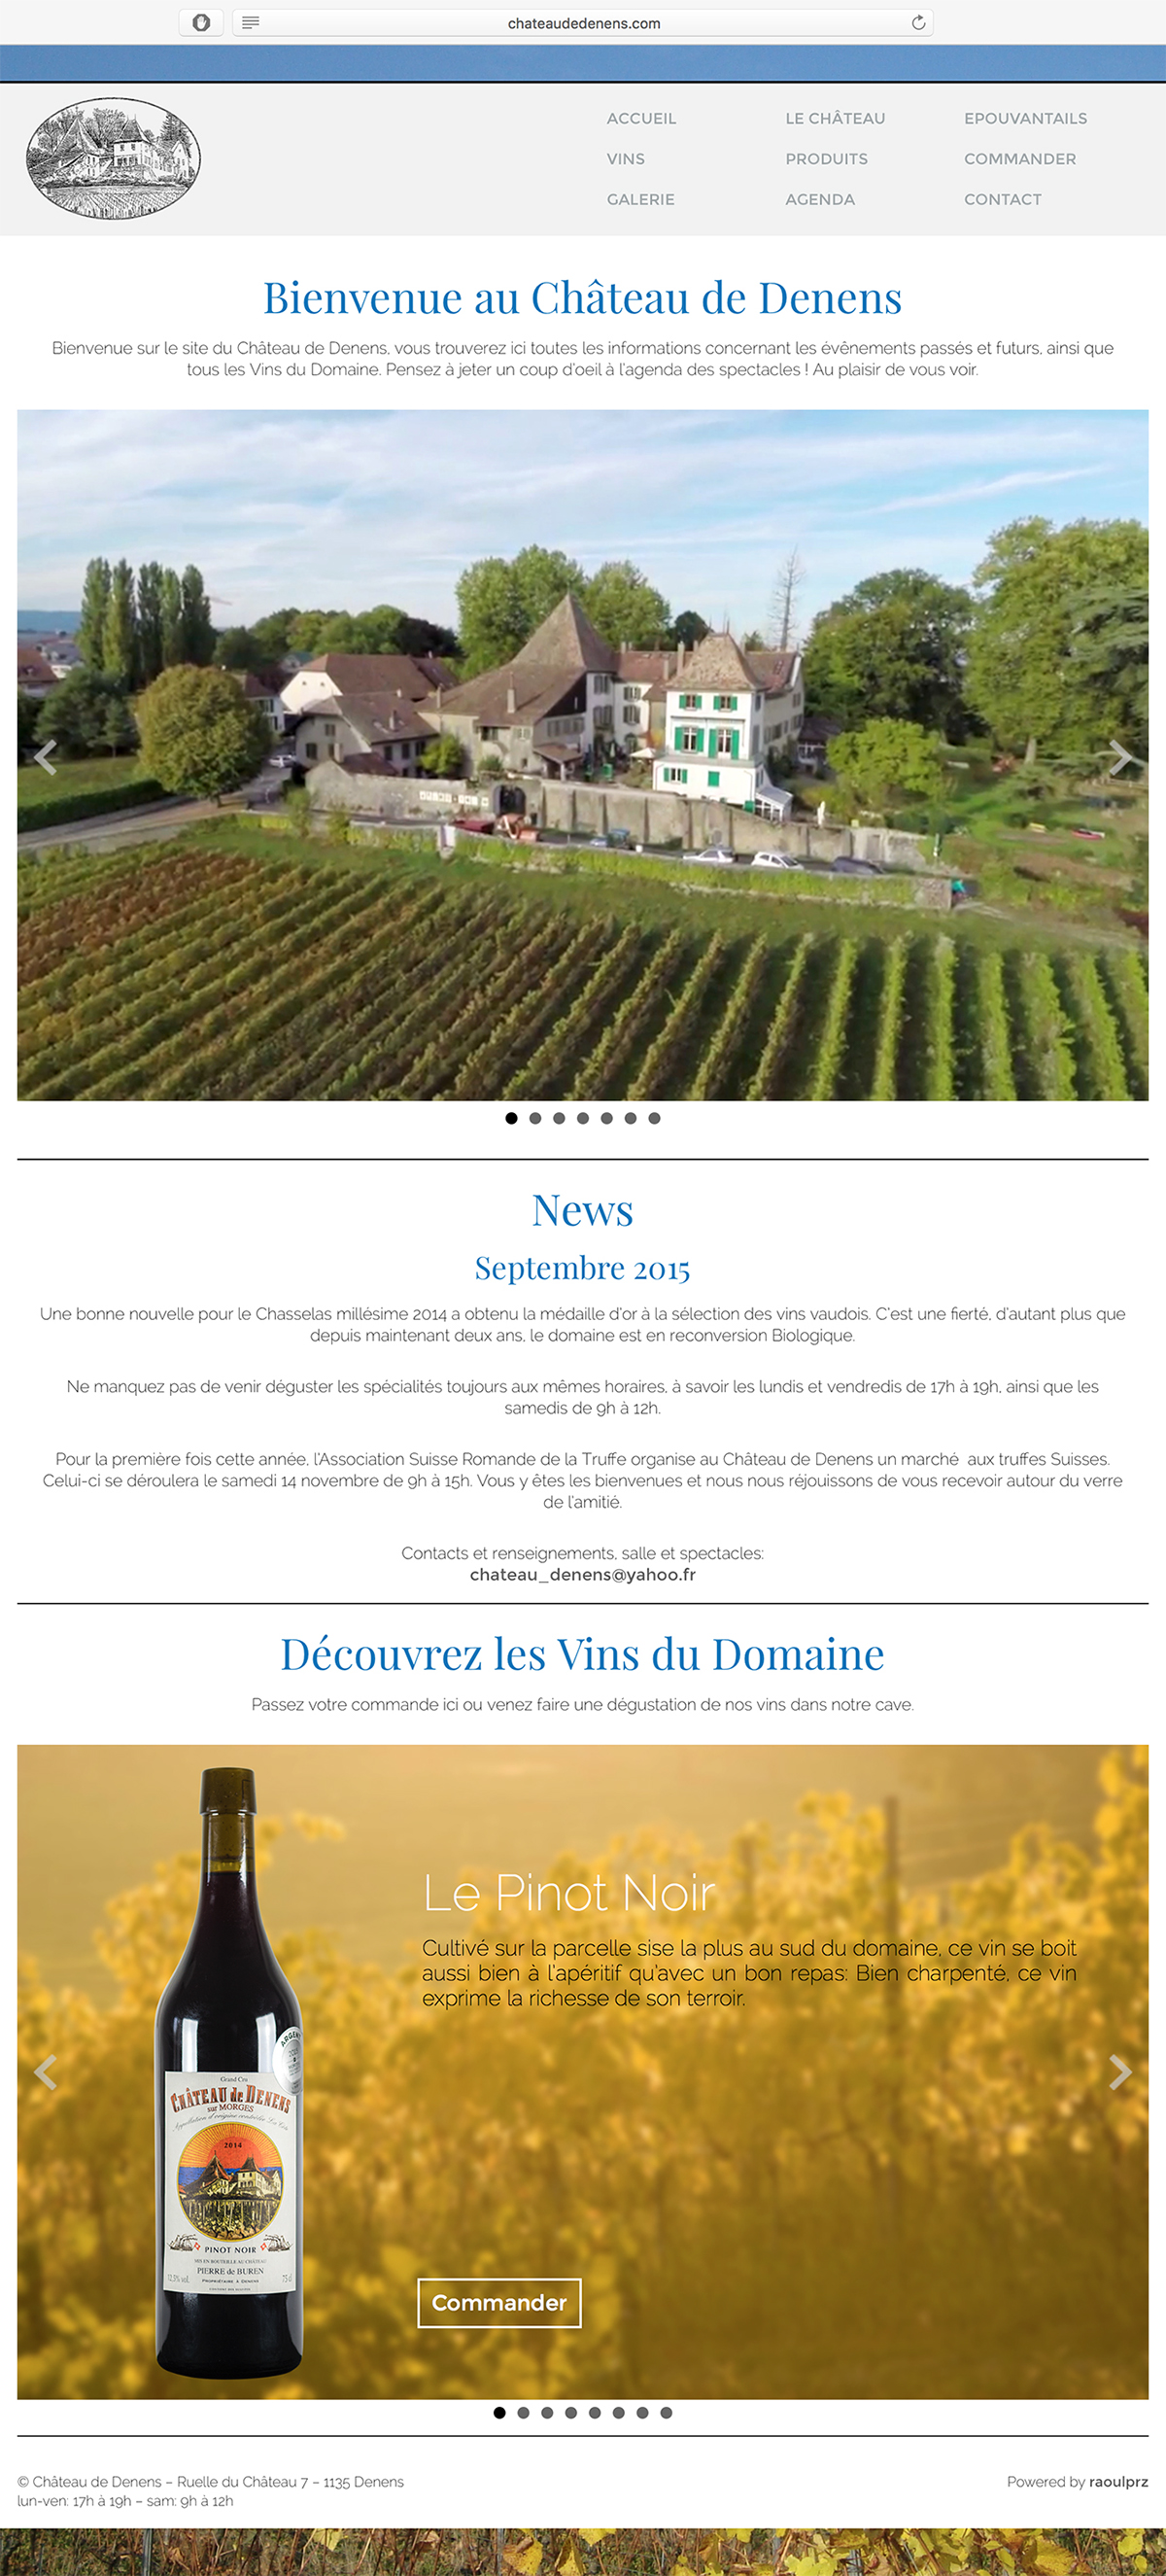 wine Vins vigneron Suisse Vaud morges Denens swiss Switzerland Castle chateau vignes vineyard vine